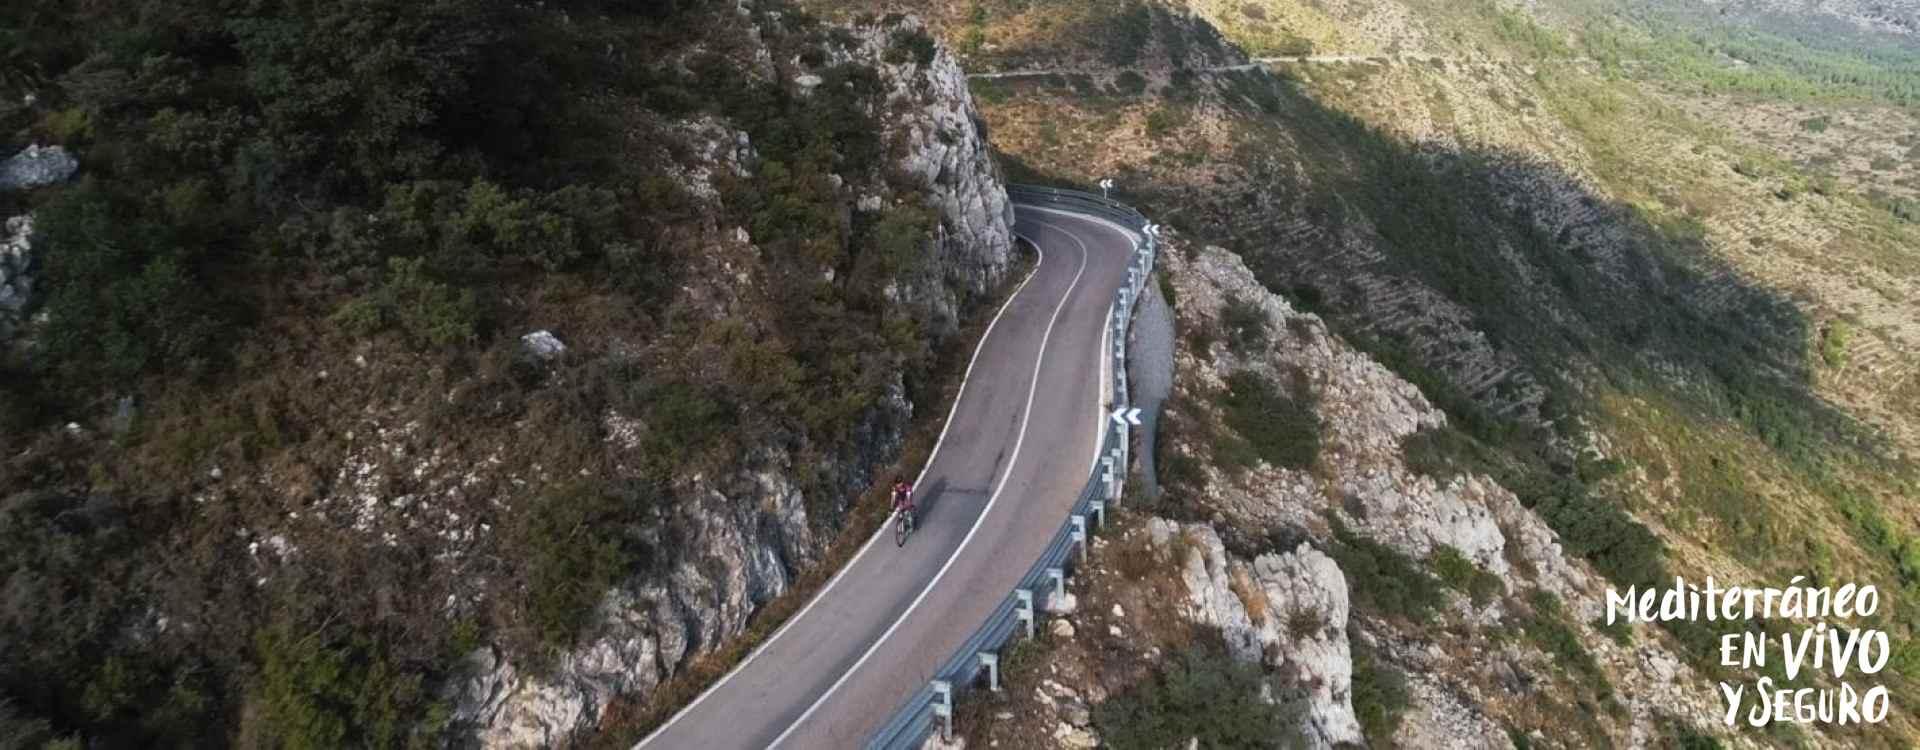  Imatge d'una gran ruta de la Comunitat Valenciana per la muntanya